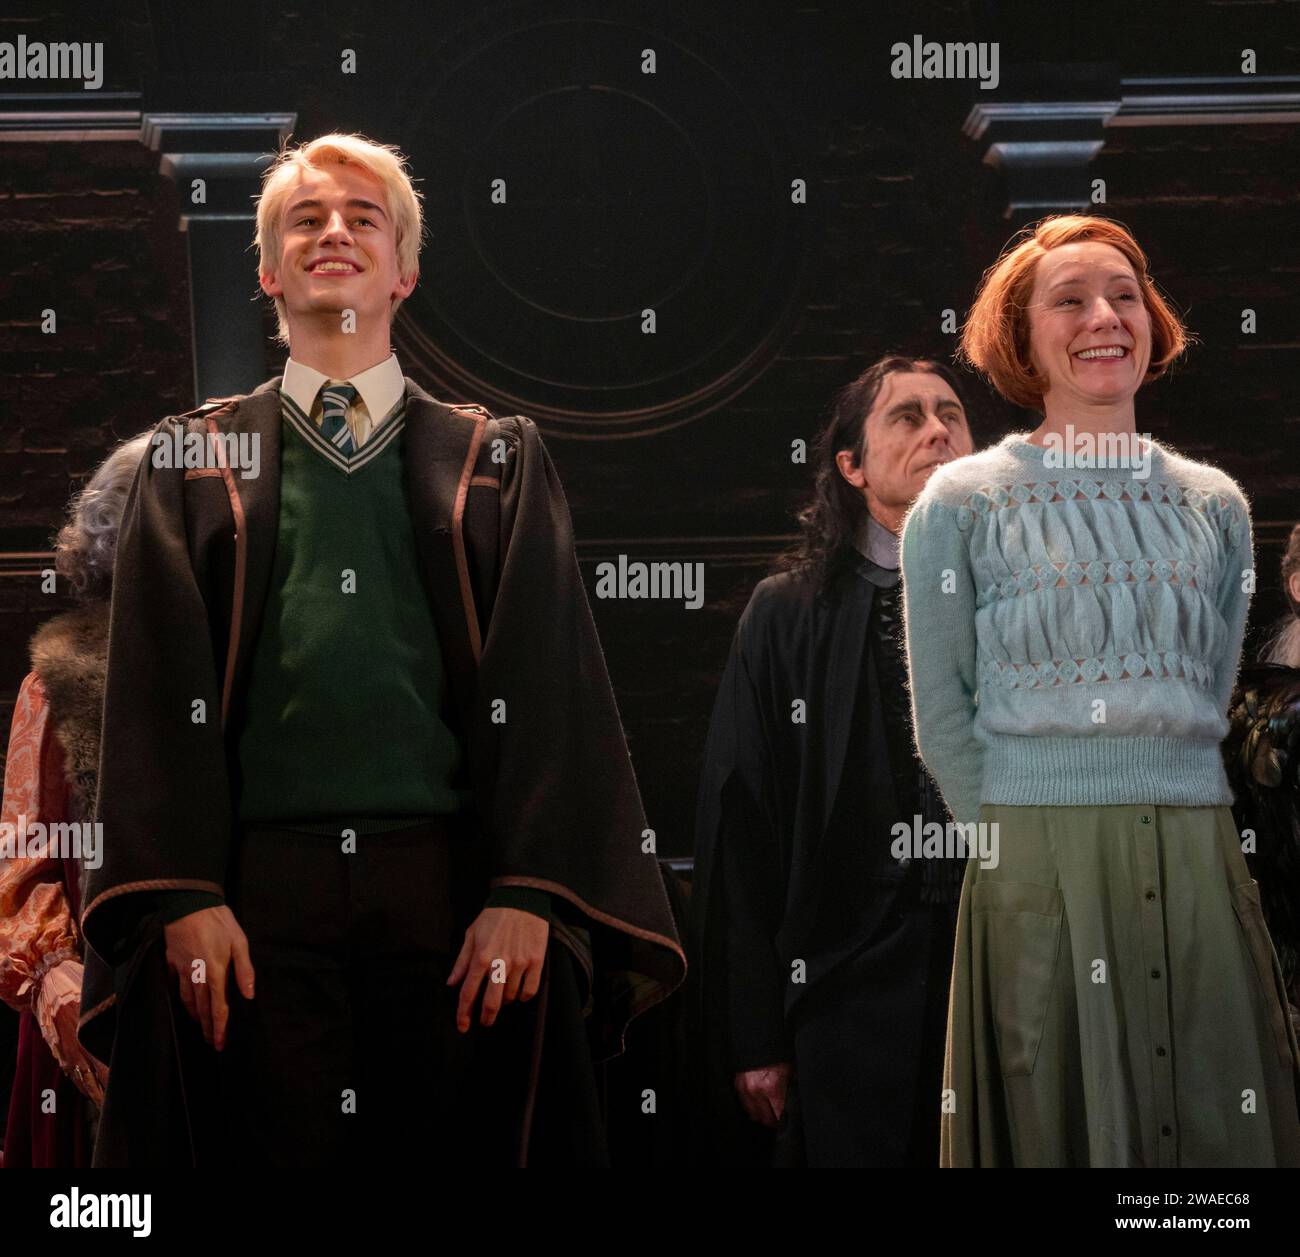 Harry Aklowe dans le rôle de Scorpius et Polly Frame dans le rôle de Ginny, Col rideau, Harry Potter et l'enfant maudit, Palace Theatre, Londres, Royaume-Uni Banque D'Images